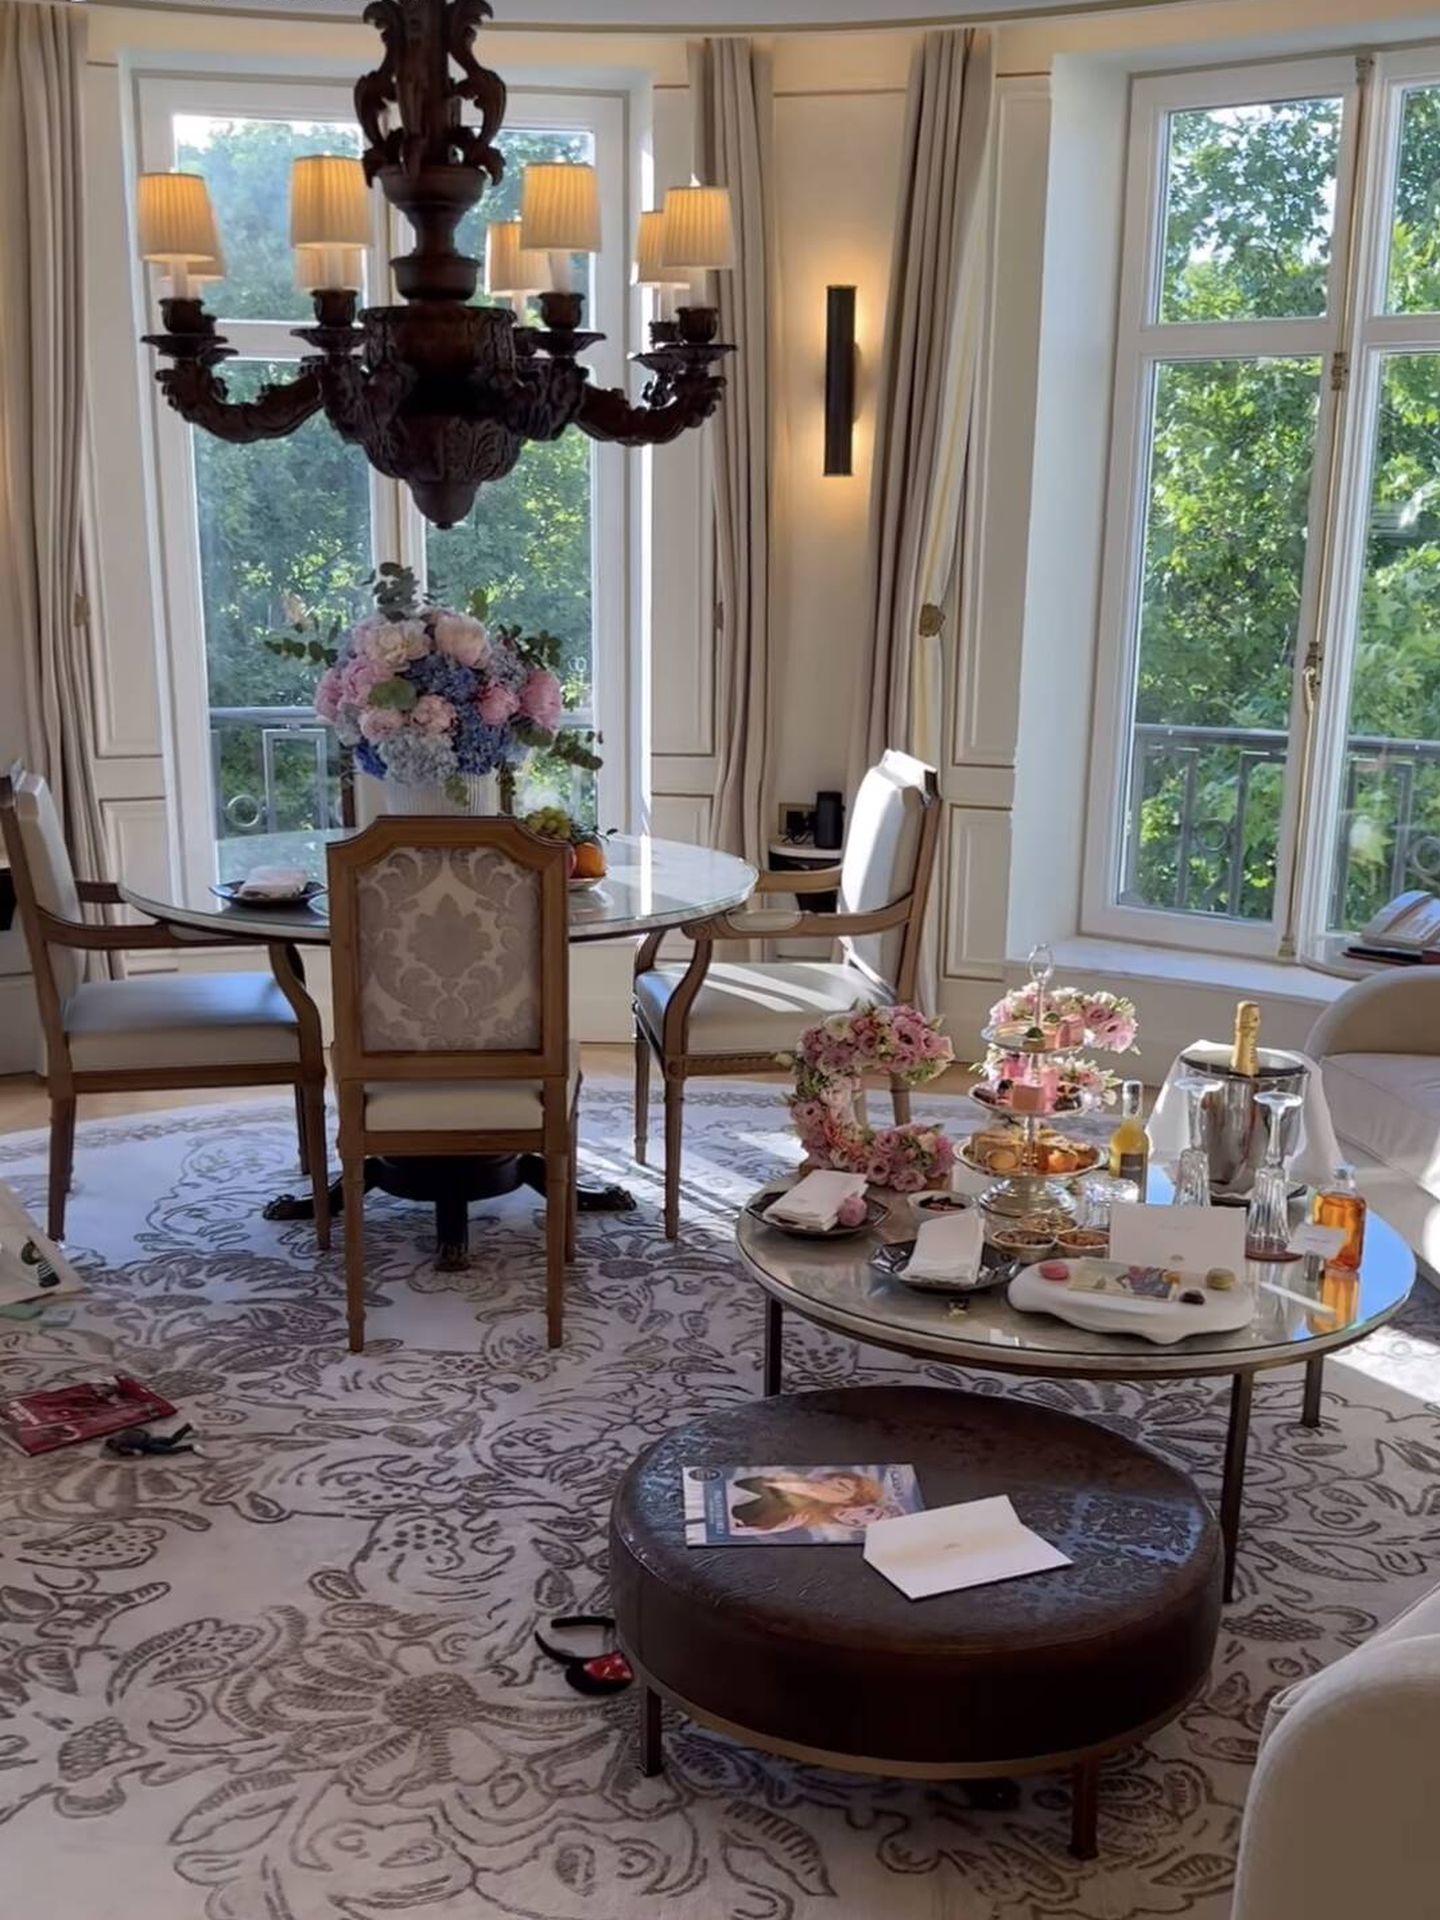 Chiara Ferragni elije el Ritz para pasar unos días de lujo en Madrid. (Instagram / @chiaraferragni)